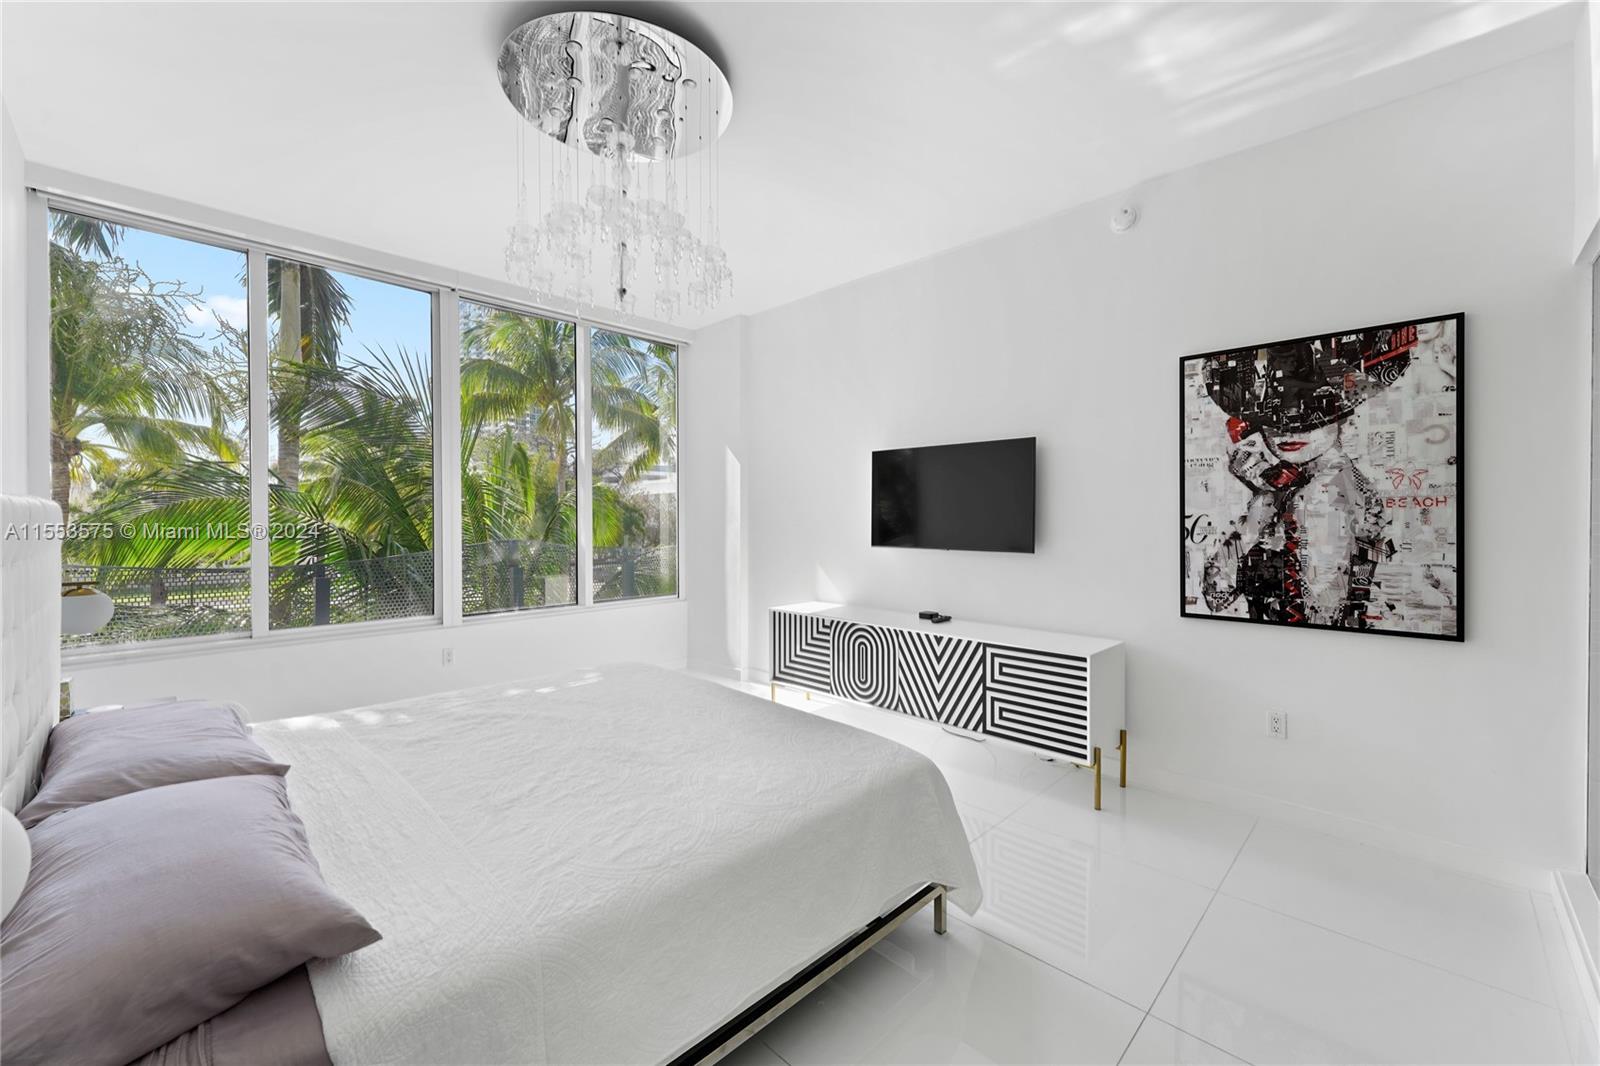 2100 Park Ave 201, Miami Beach, Miami-Dade County, Florida - 3 Bedrooms  
2 Bathrooms - 